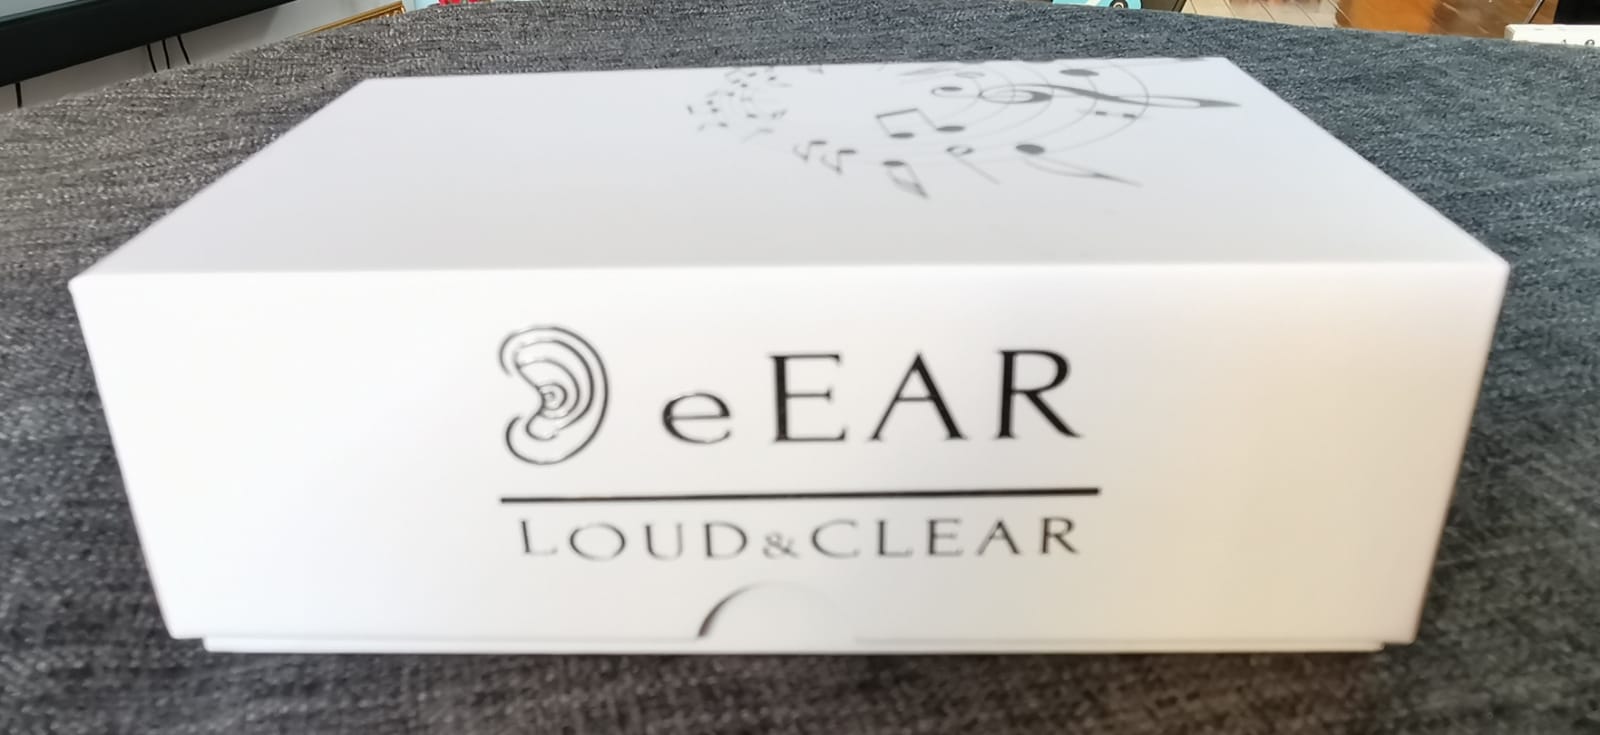 Par de amplificadores de audífonos digitales eEAR para oídos izquierdo y derecho, CIC (completo en canal), eEar CIC-T25 diseñado y fabricado en los EE. UU.